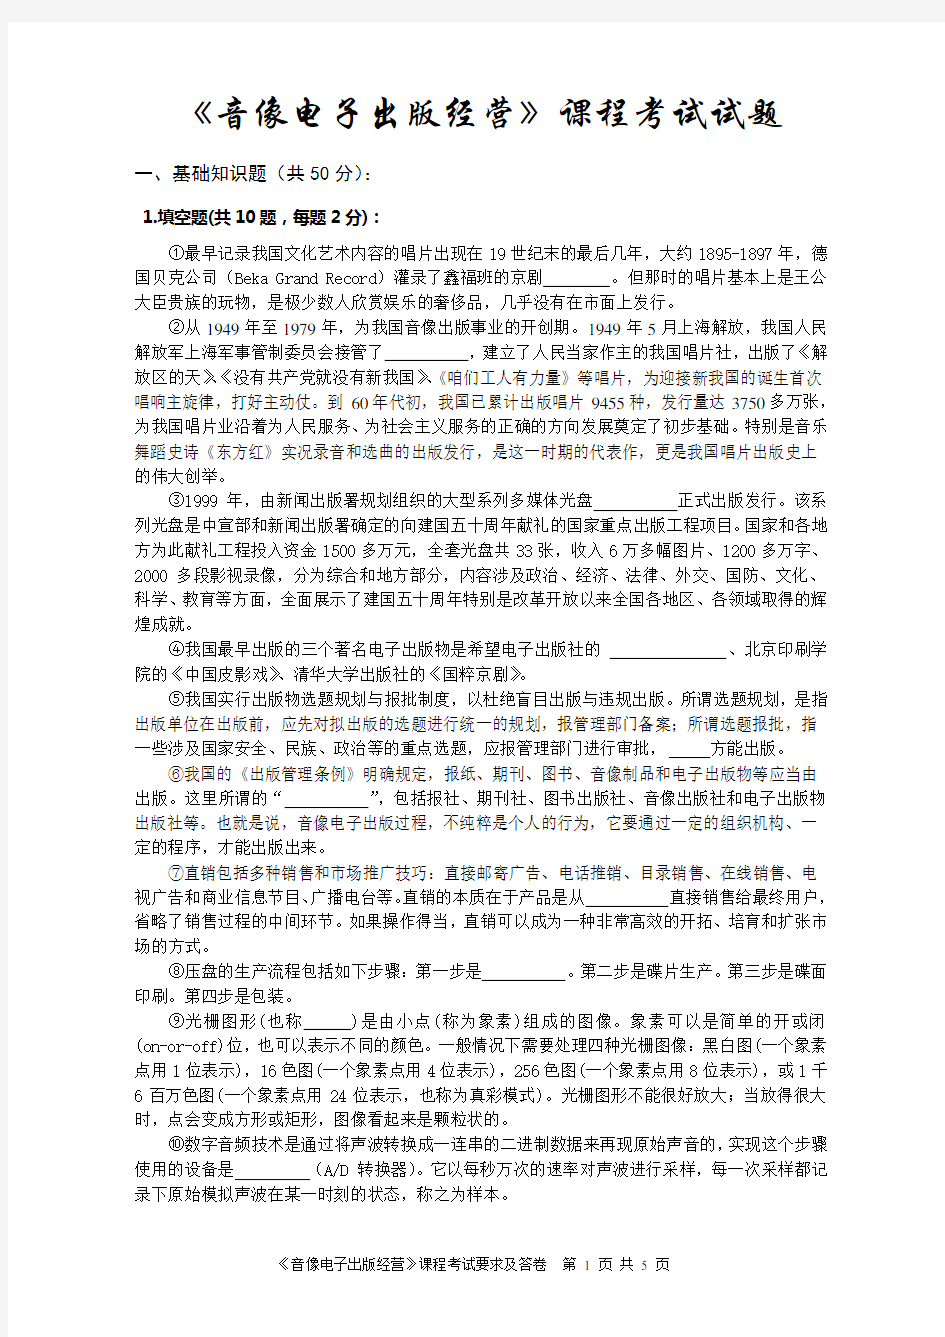 广告设计基础课程考试题-中国传媒大学自考